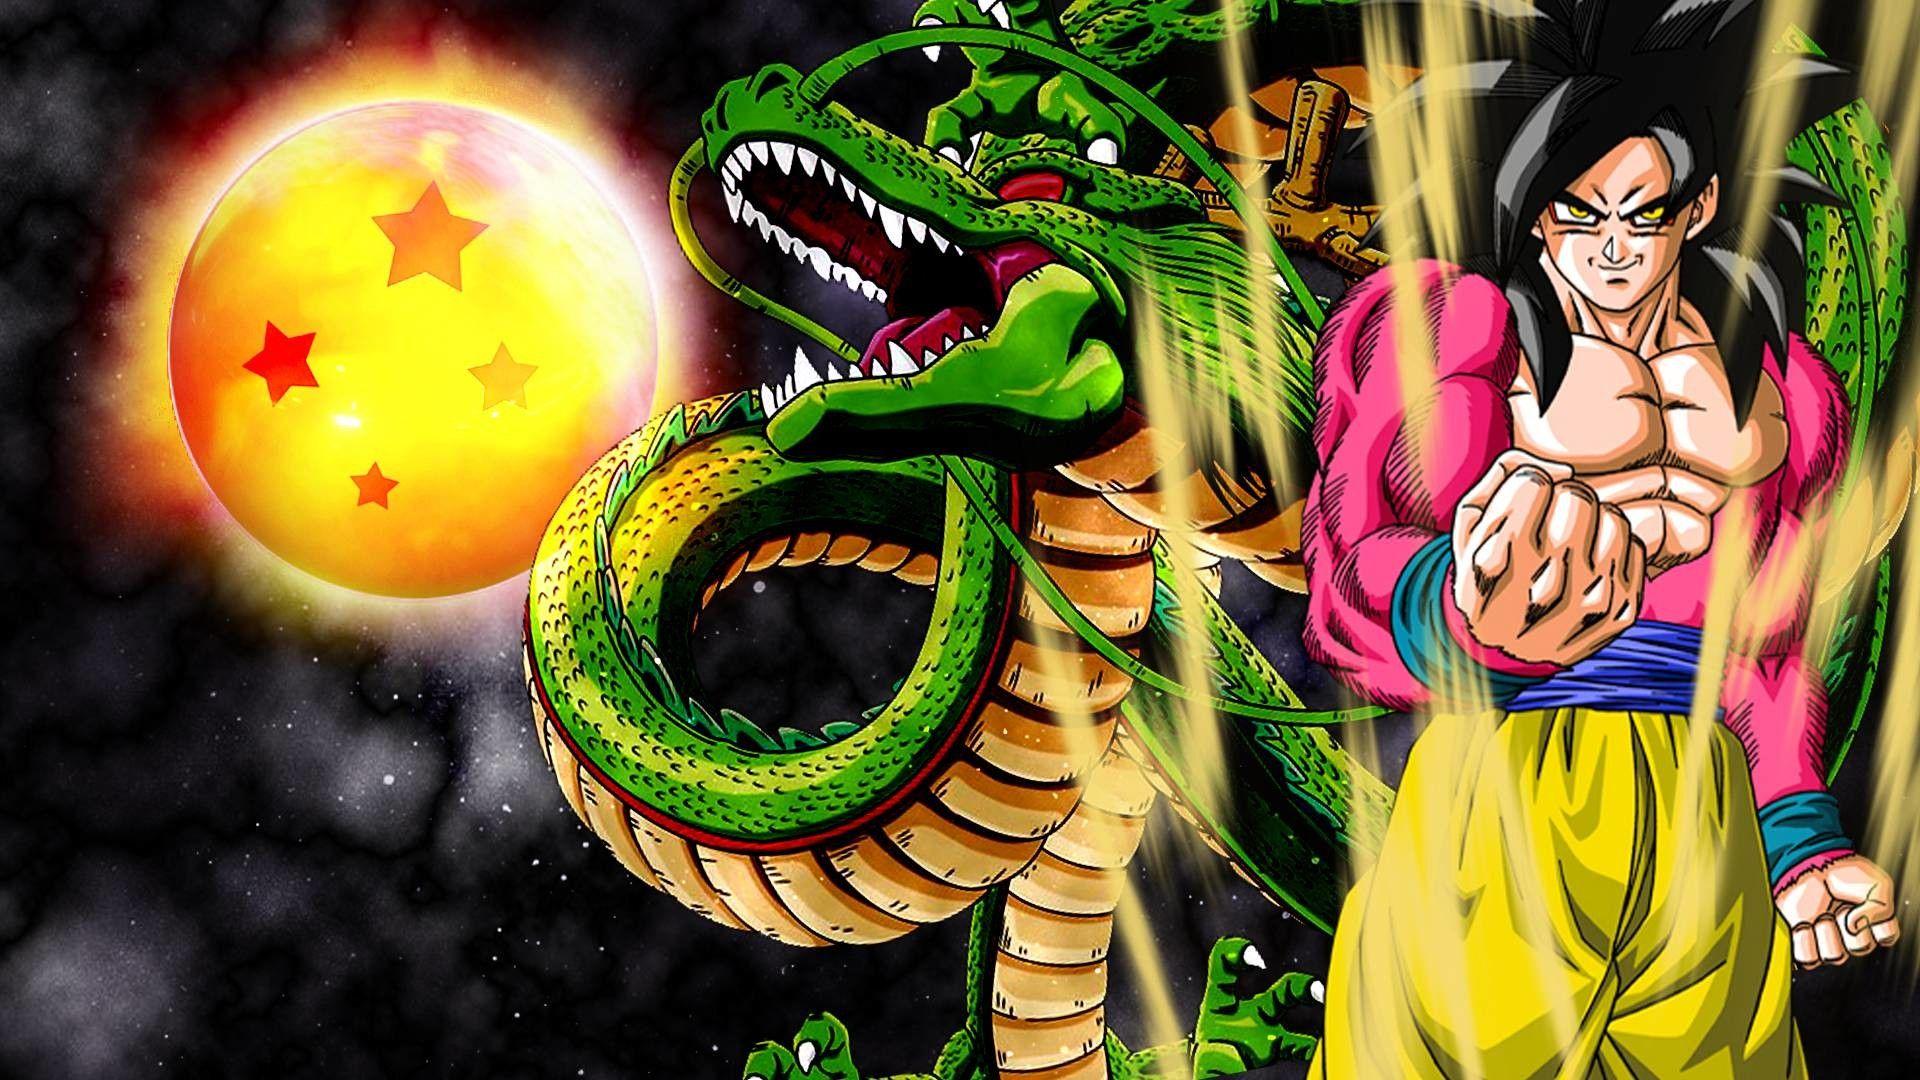 Super Saiyan 4 Goku Wallpaper Super Saiyan 4 Goku And Vegeta